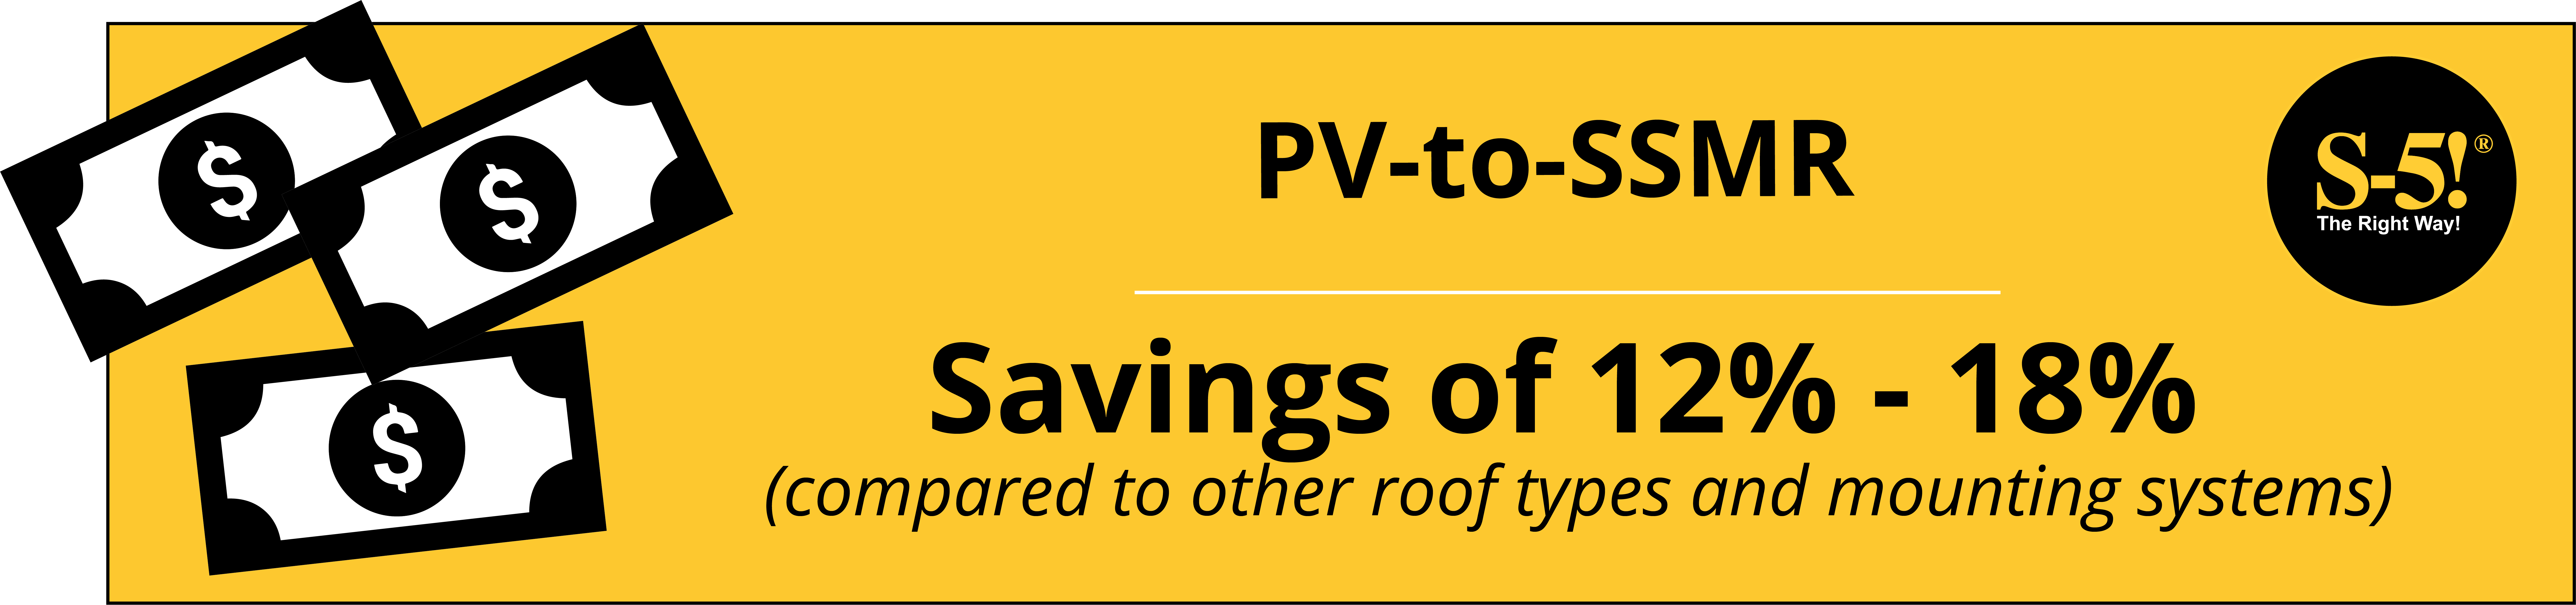 S-5!® PV-to-SSMR System Savings